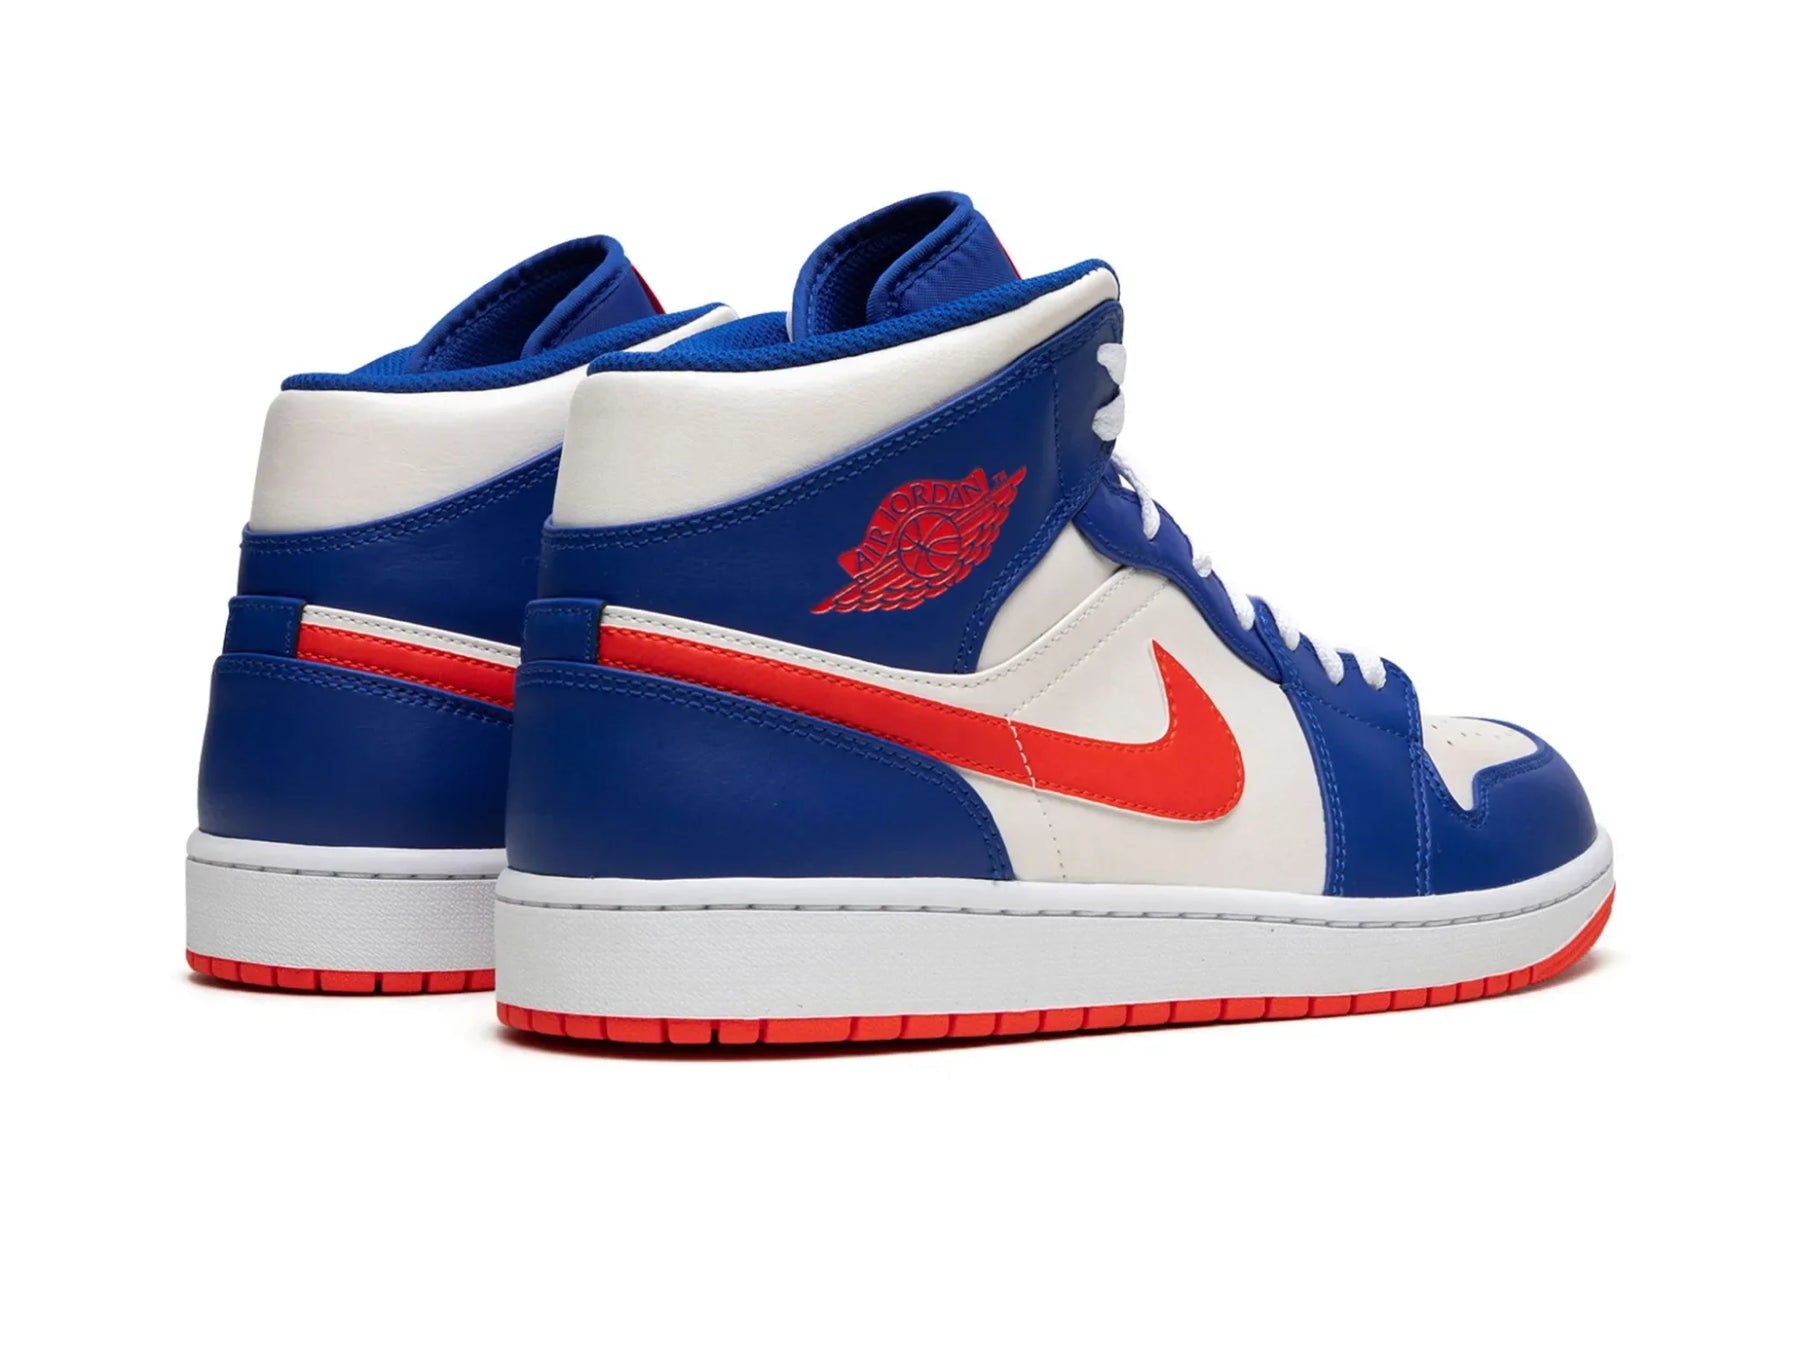 Nike Air Jordan 1 Mid "Knicks" - street-bill.dk